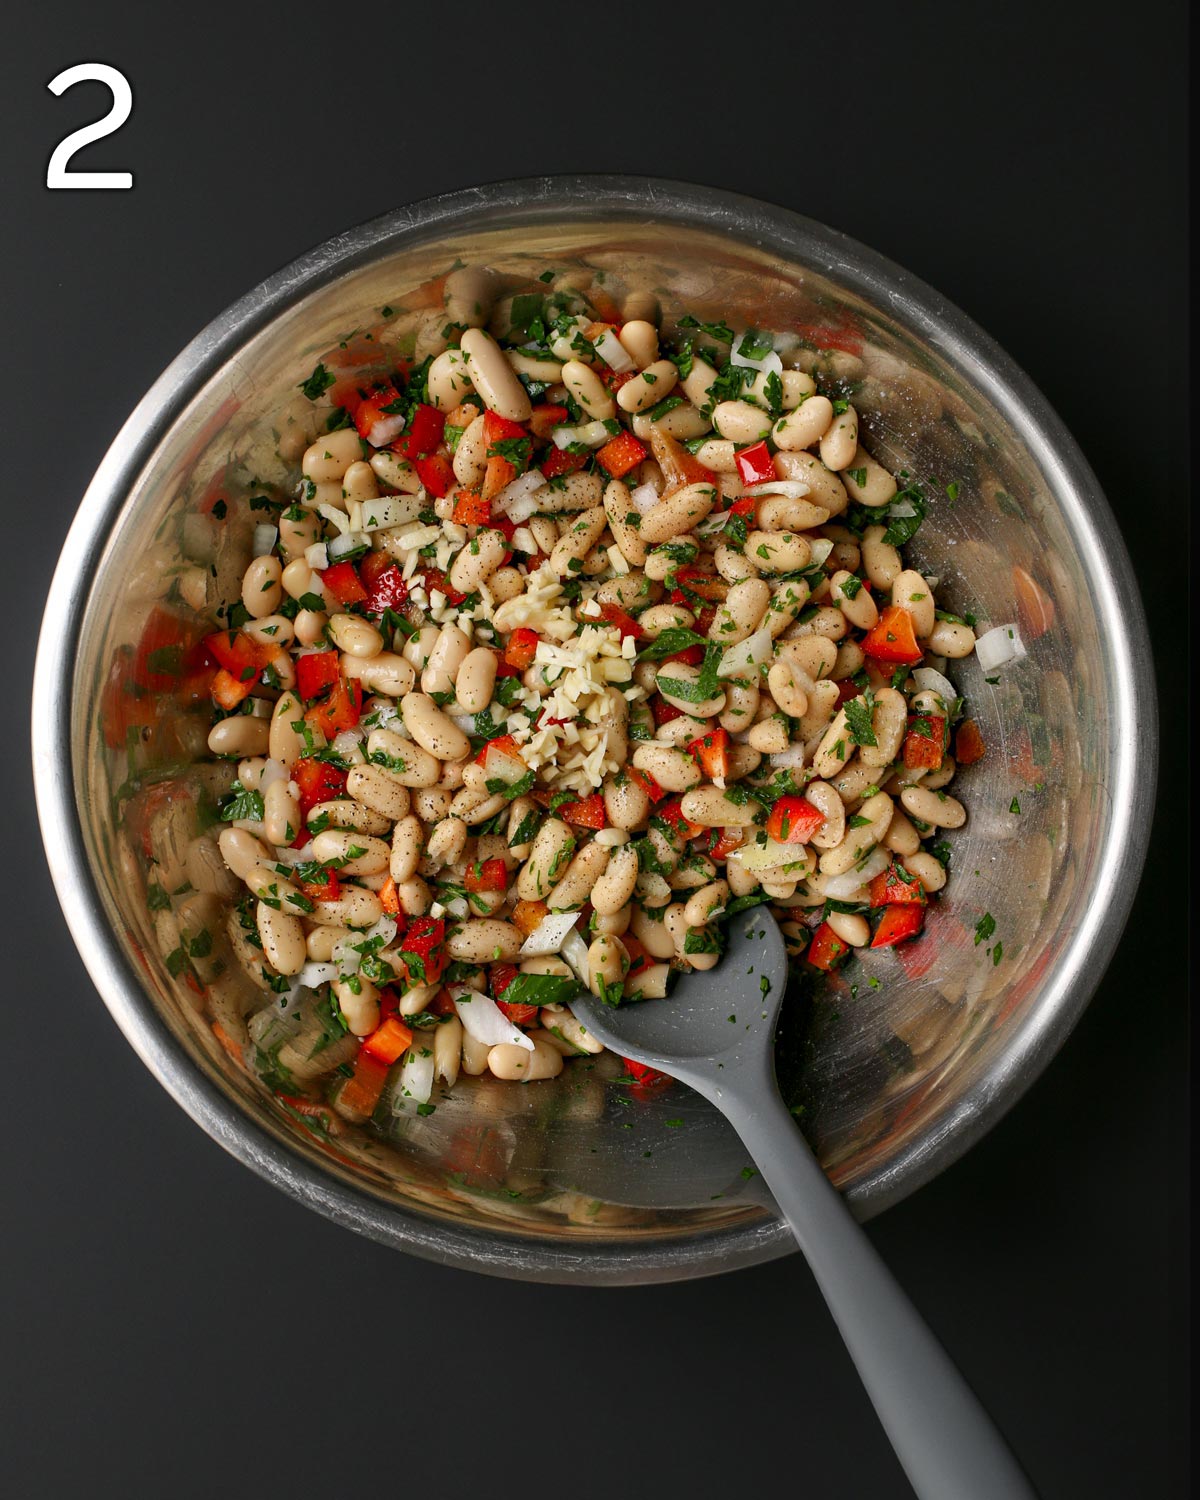 seasonings added to bean salad.